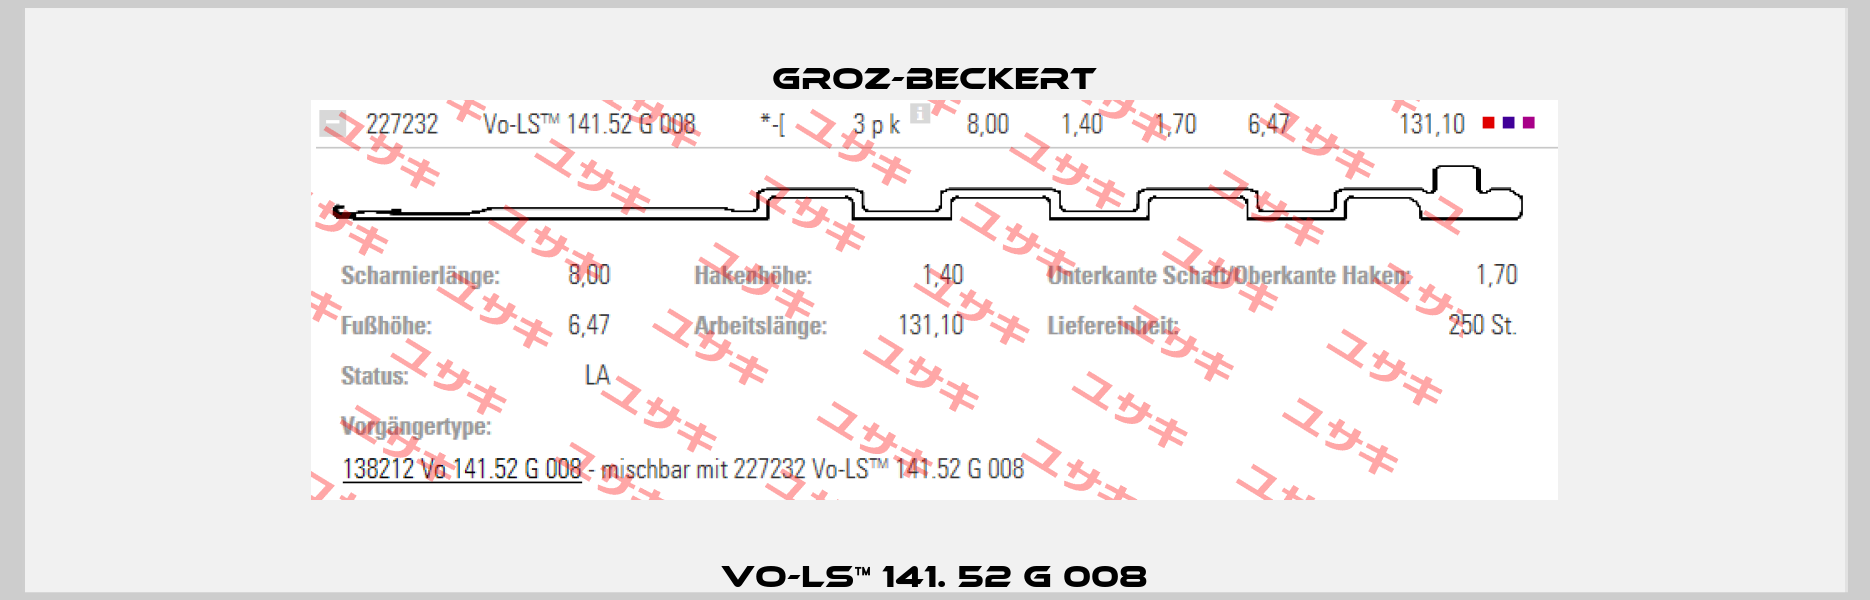 VO-LS™ 141. 52 G 008 Groz-Beckert